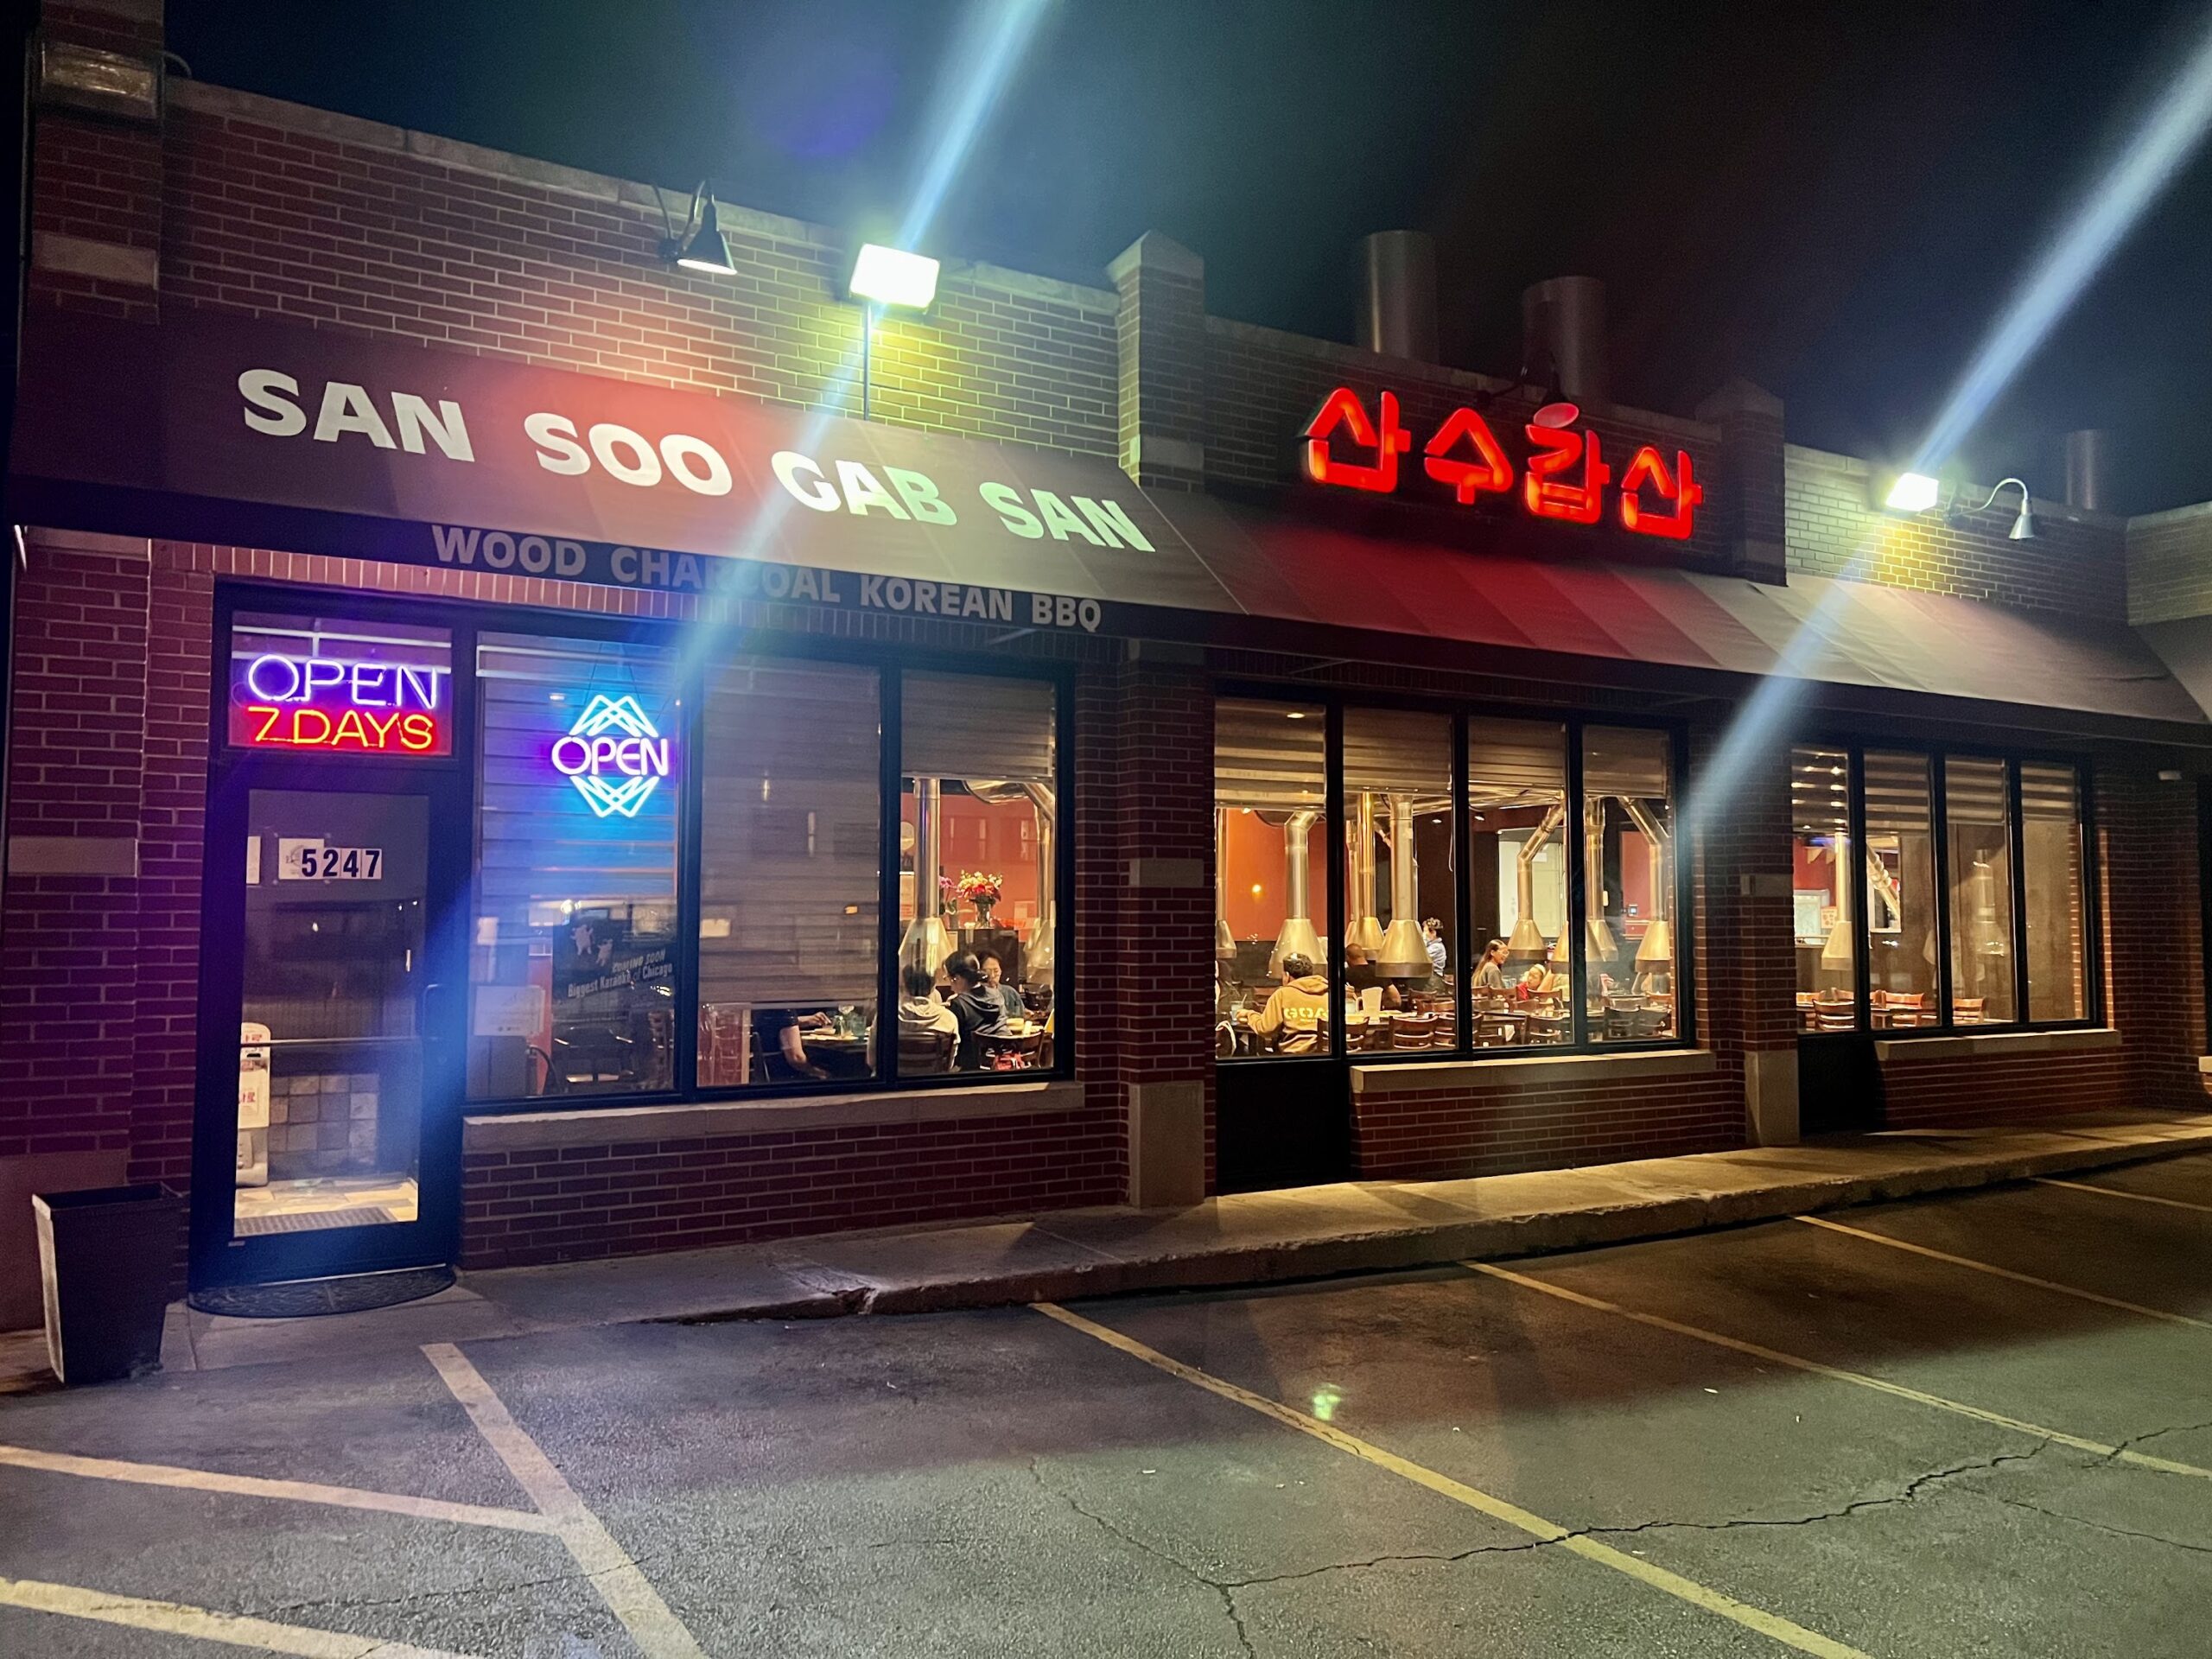 Restaurante-San-Soo-Gab-San-Chicago